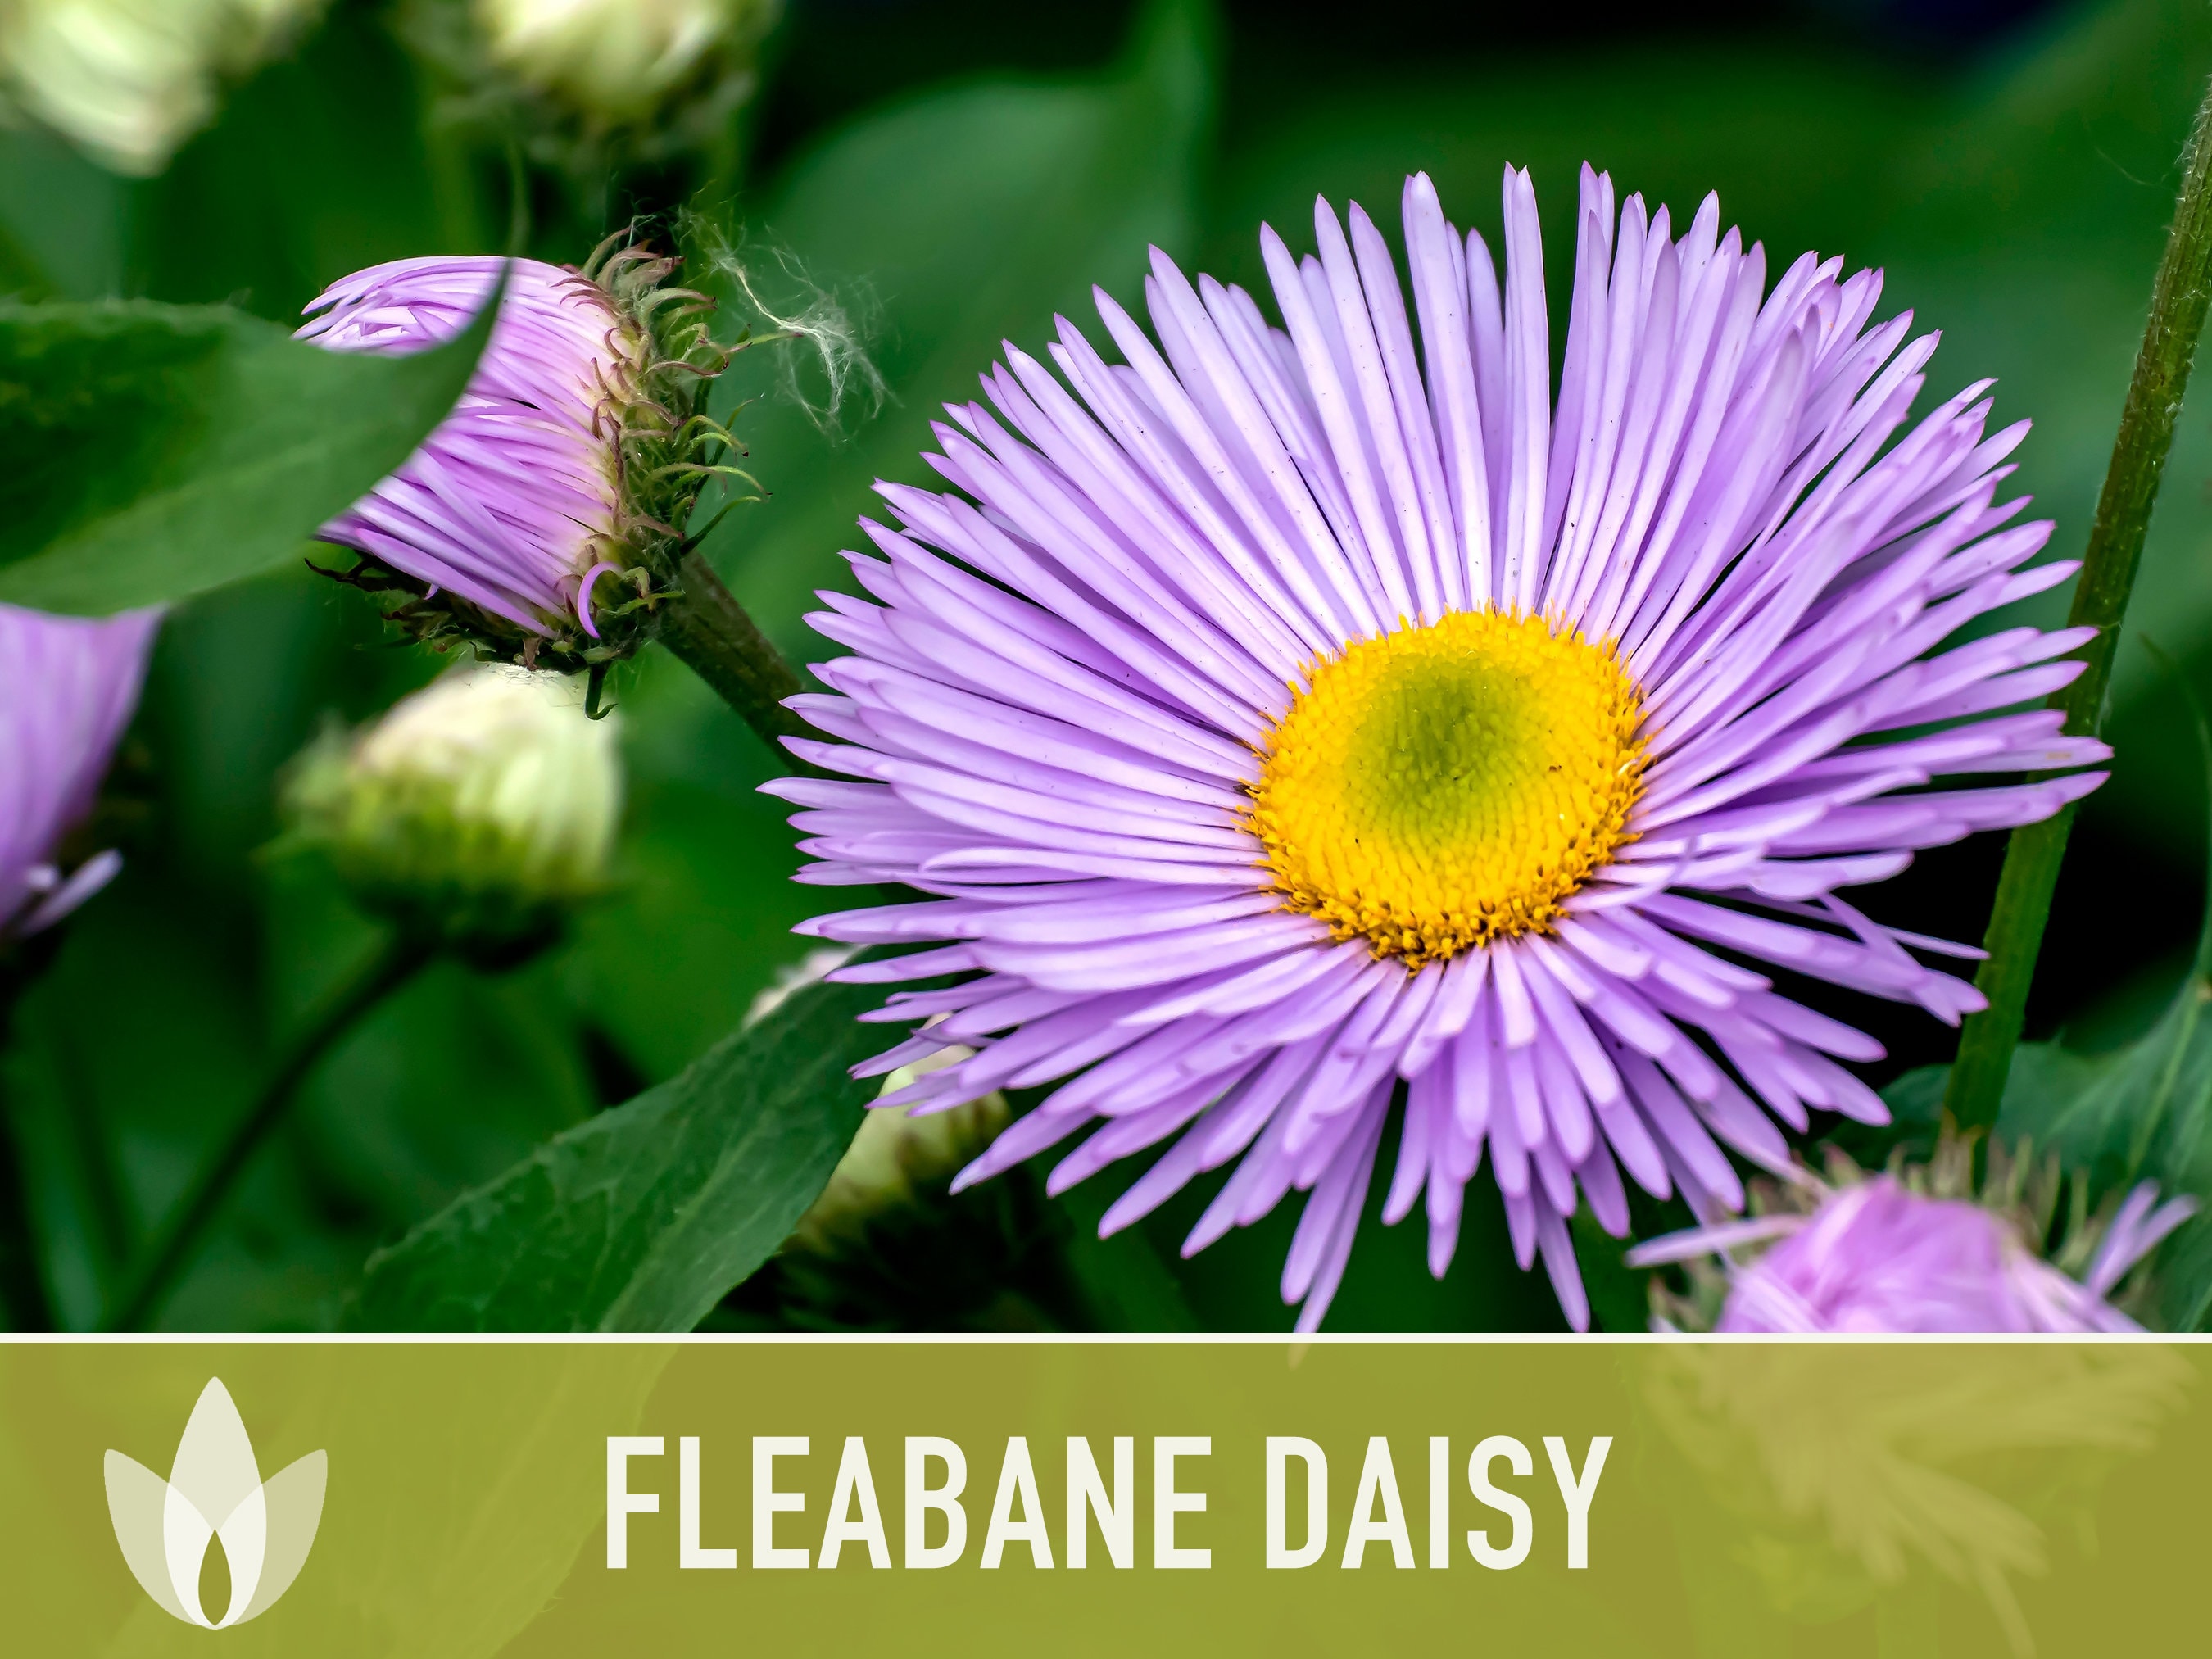 Fleabane Daisy Flower Seeds Dainty Daisy, Aspen Daisy, Showy Daisy,  Heirloom Seeds, Cut Flowers, Craft Flowers, Cottage Garden, Non-gmo -   Canada